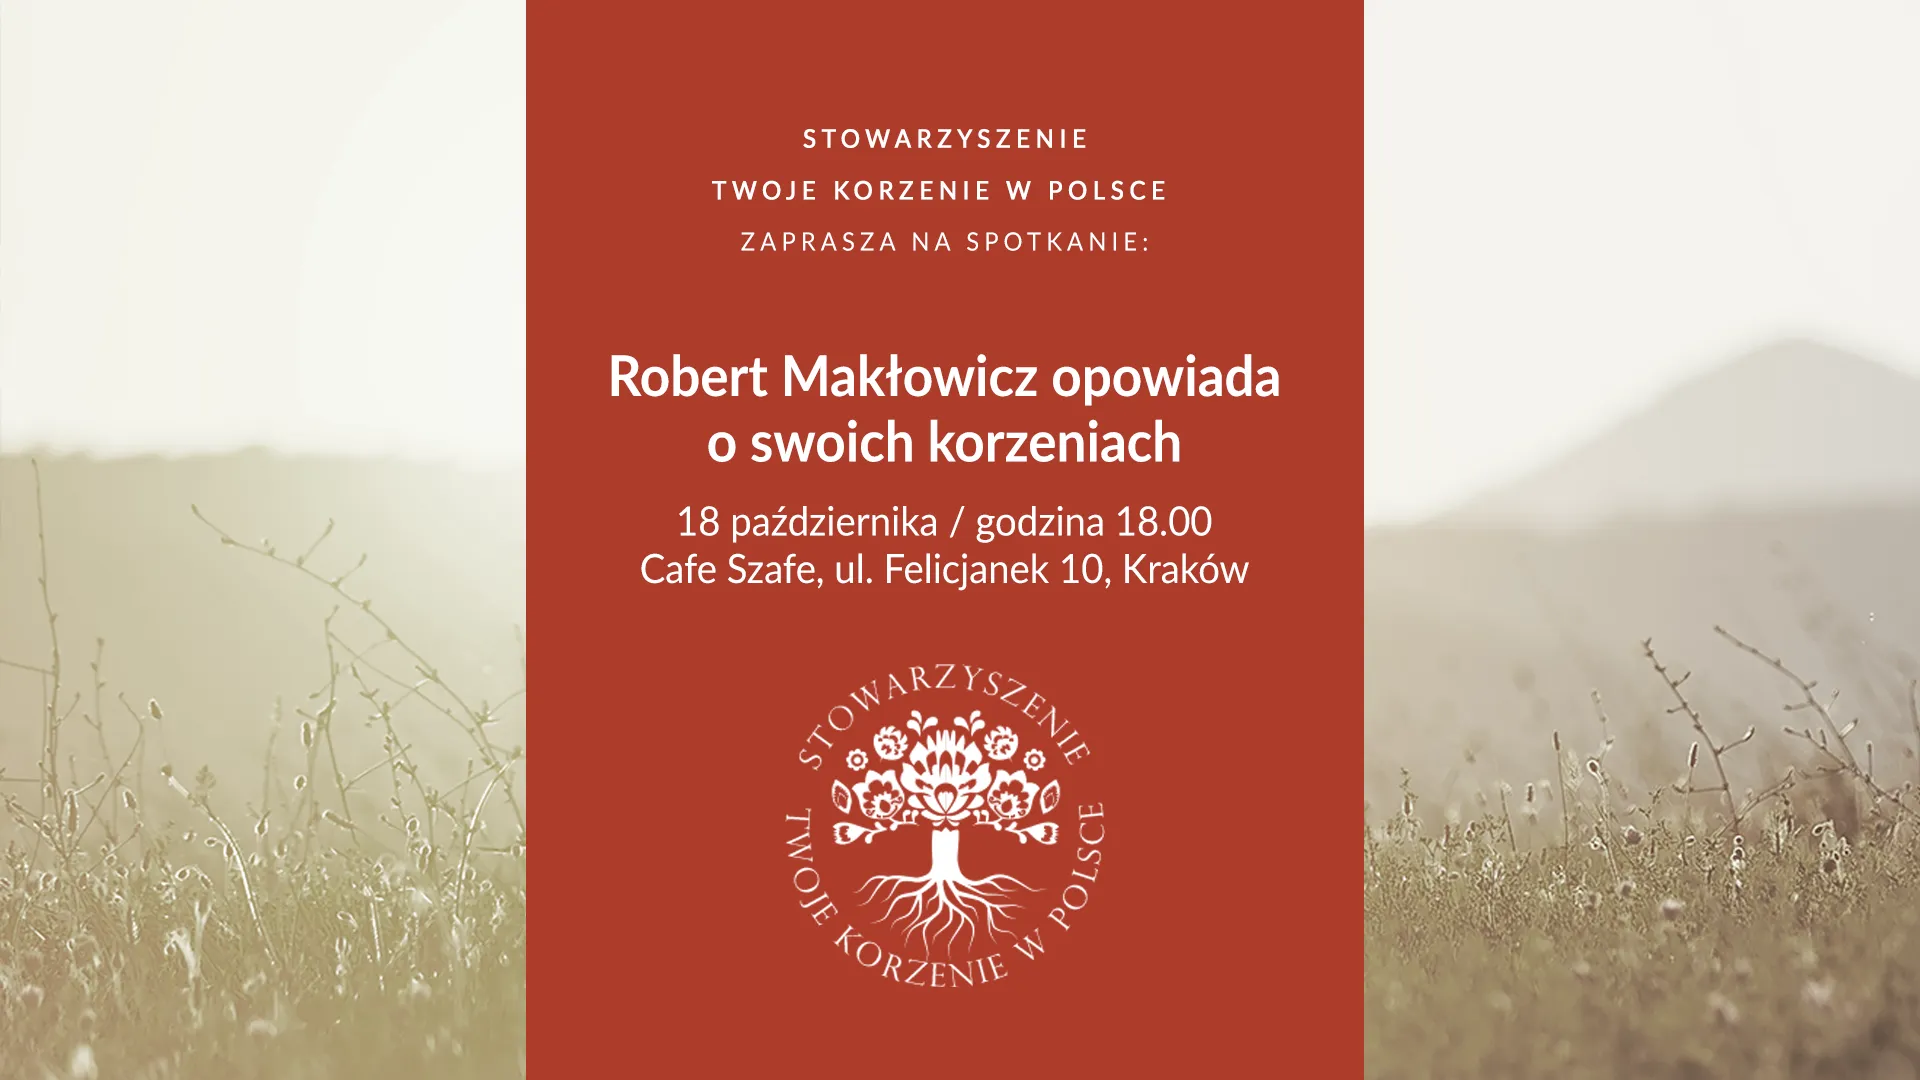 Robert Makłowicz opowiada o swoich korzeniach